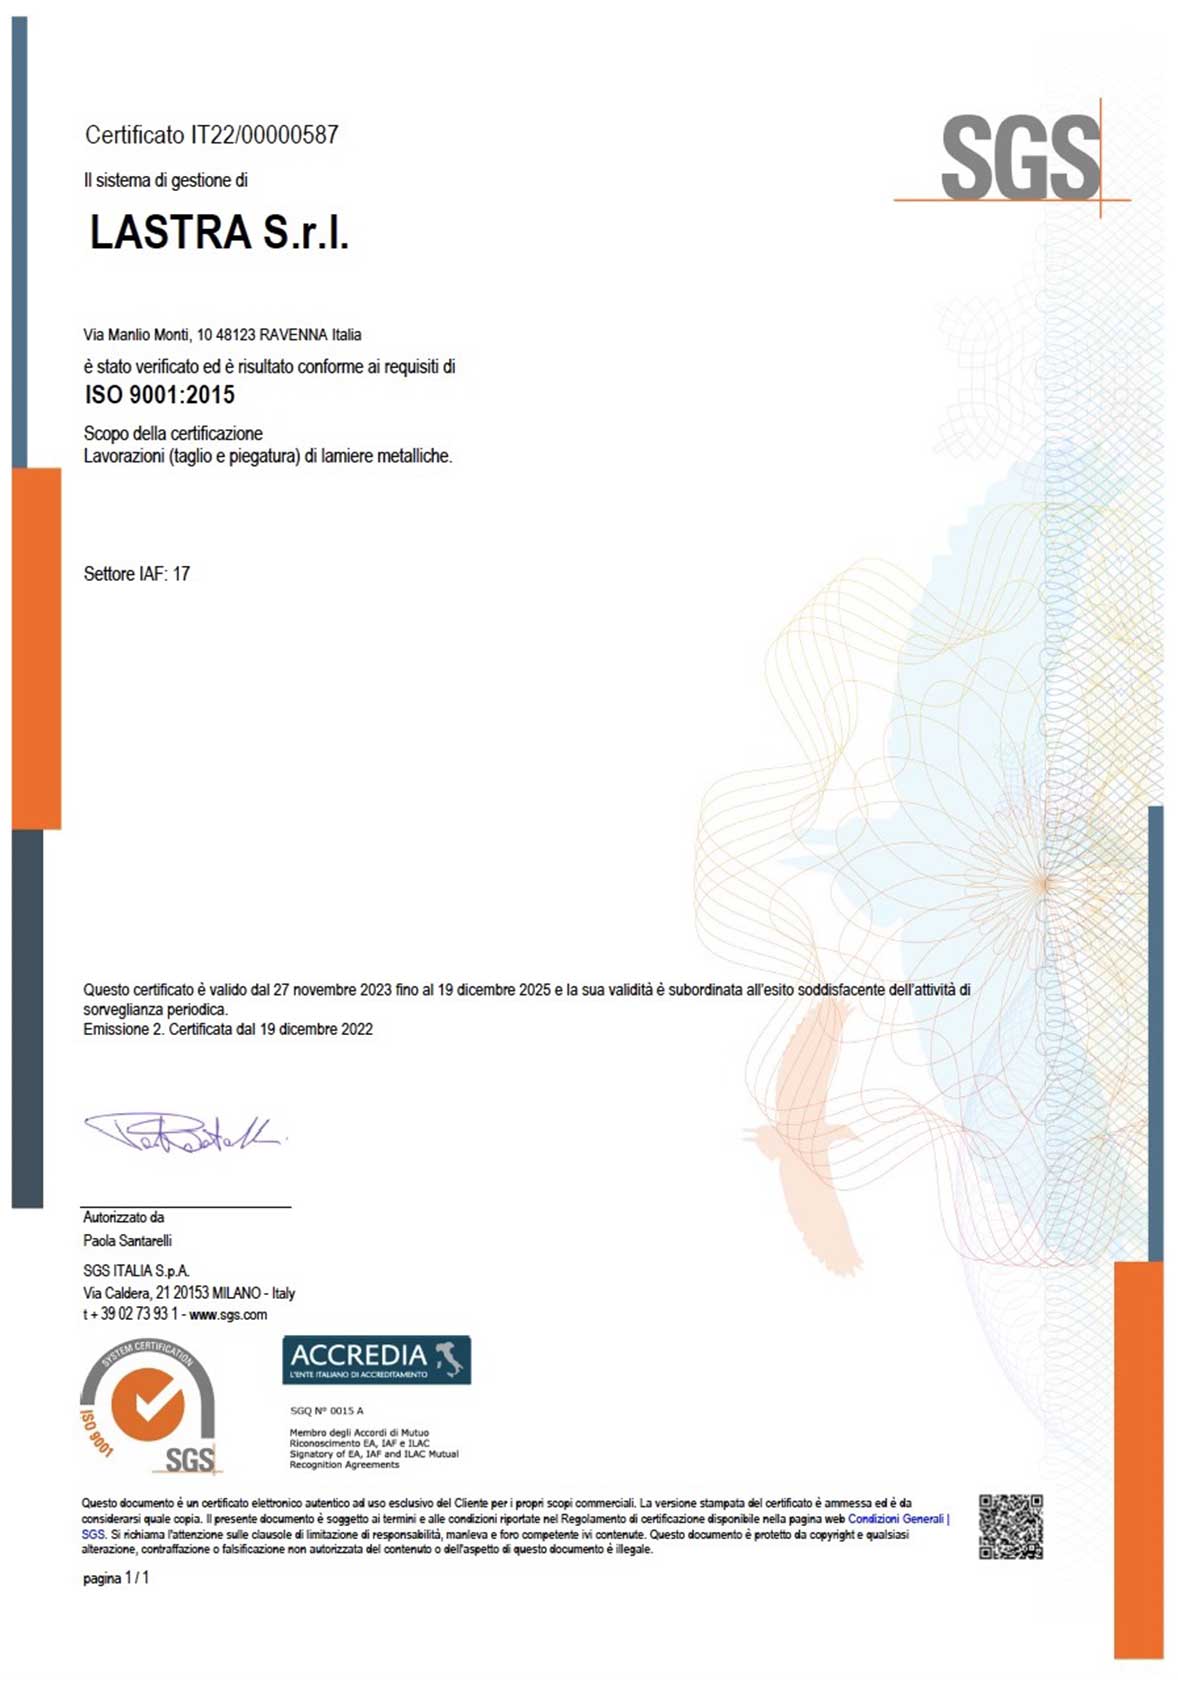 Lastra - Certificazione ISO 9001